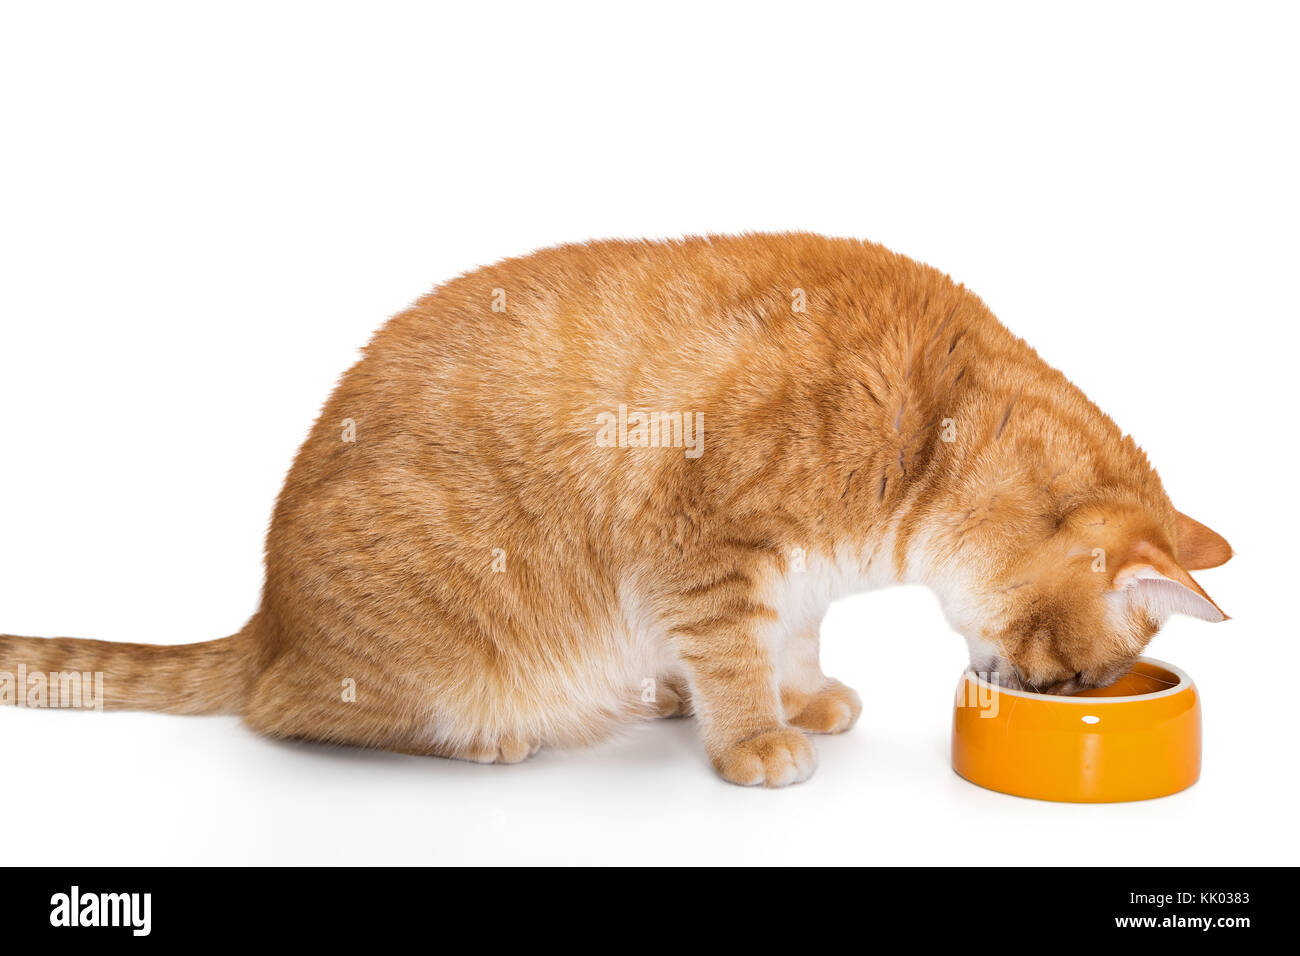 Chat rouge de manger des aliments de l'Orange Bowl, isolated on white Banque D'Images